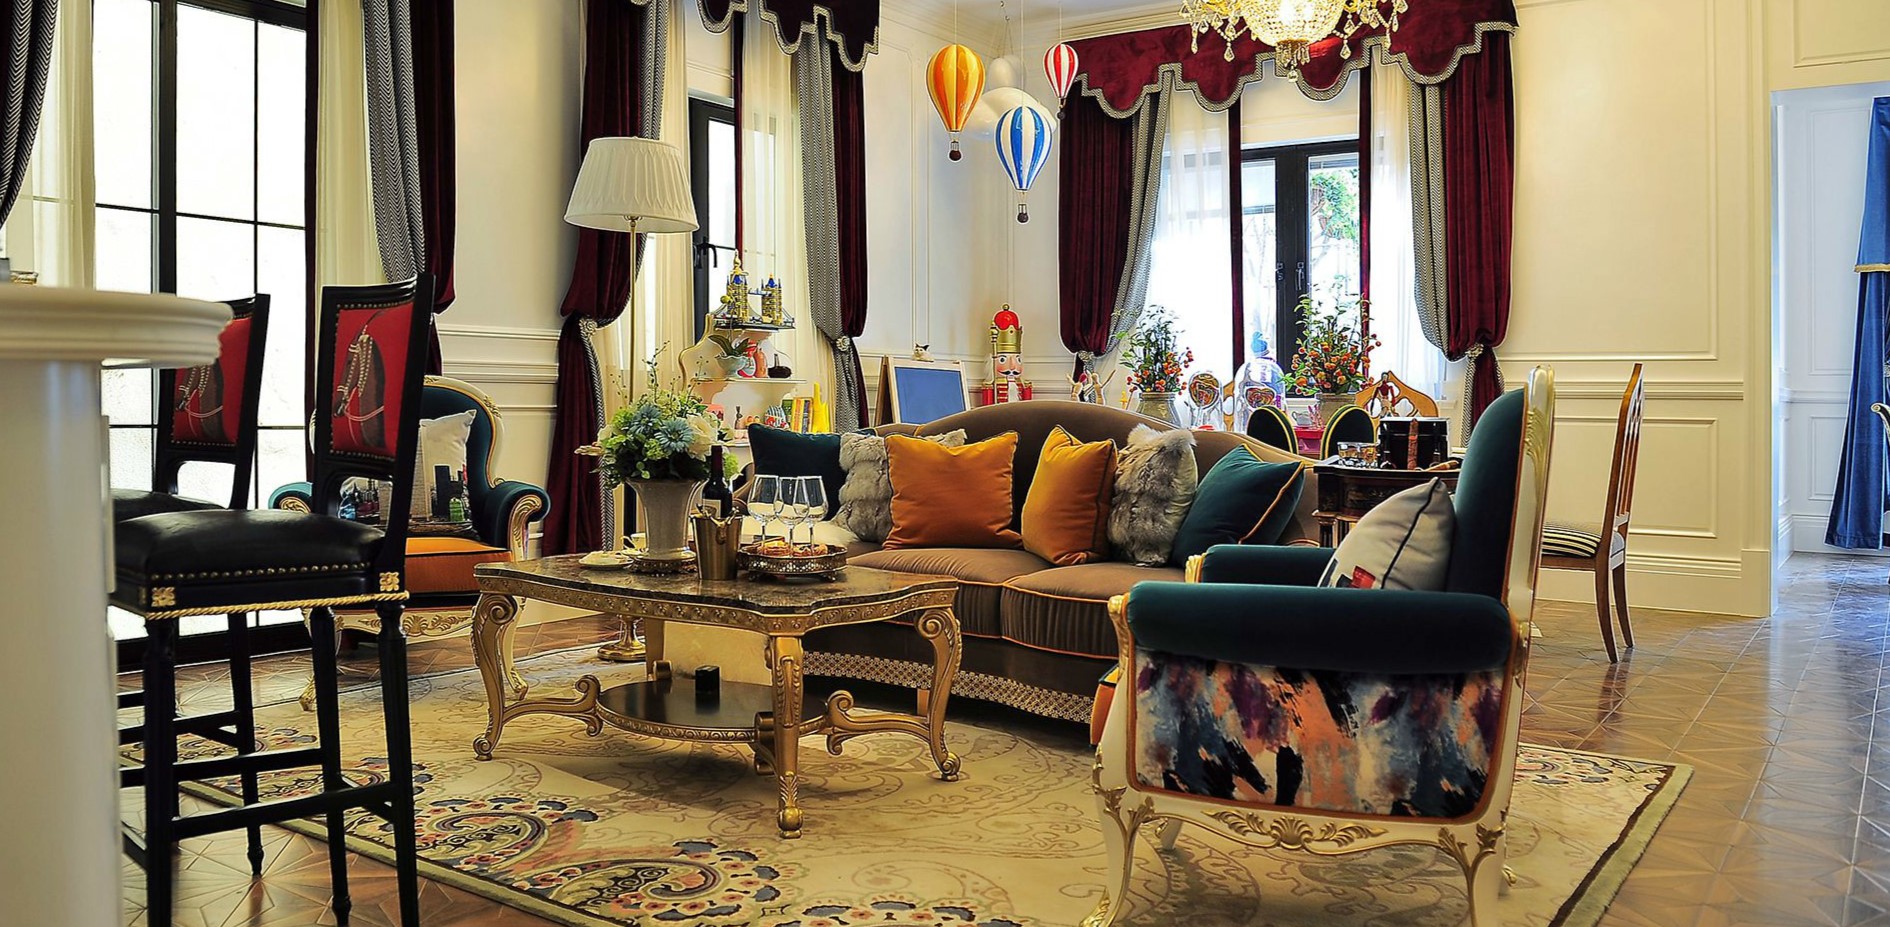 Мебель с позолоченными ножками и роскошные шторы позволят создать дворцовый интерьер в гостиной